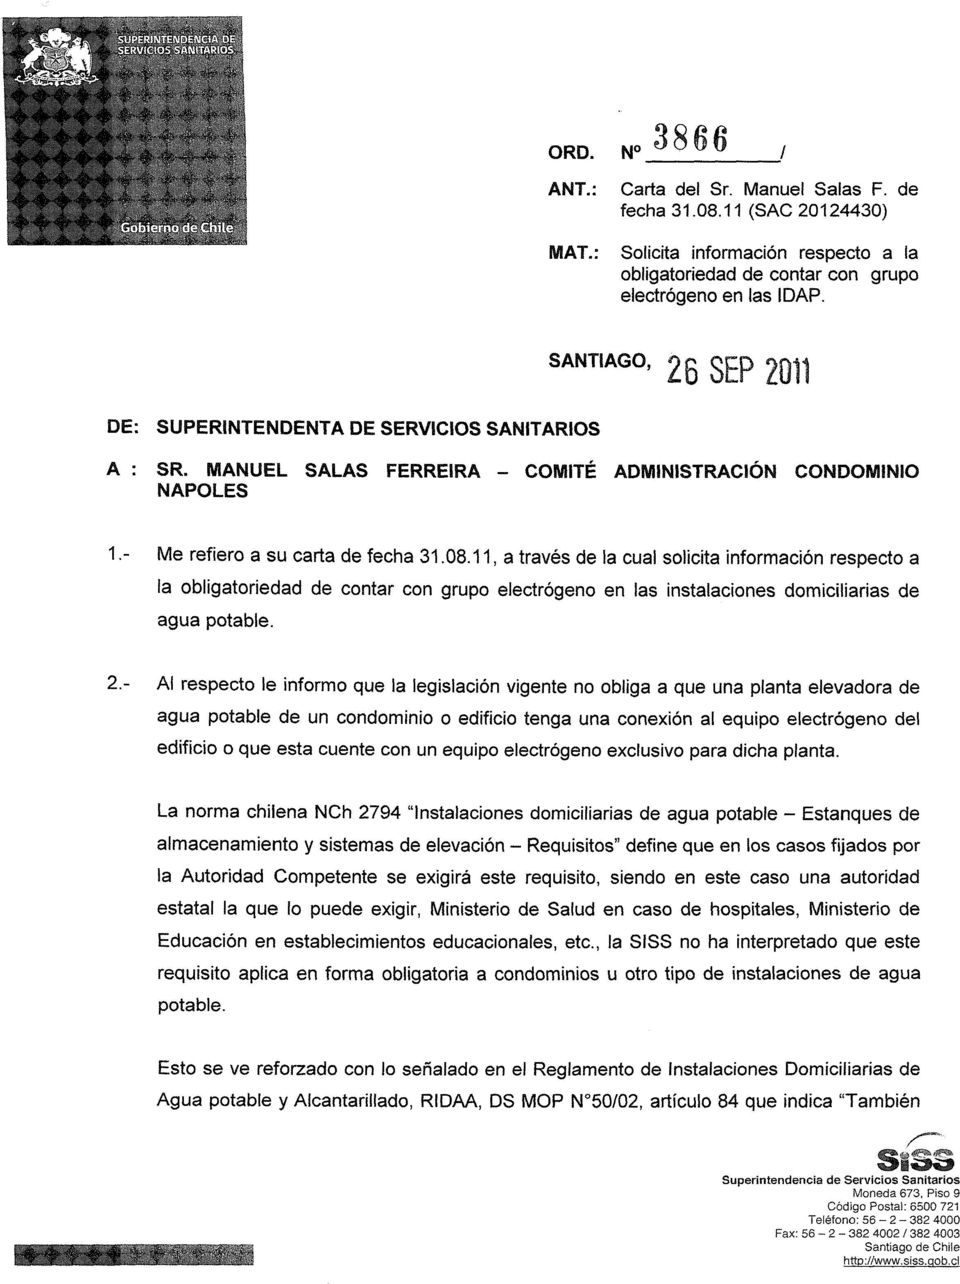 MANUEL SALAS FERREIRA - COMITÉ ADMINISTRACIÓN CONDOMINIO ÑAPOLES 1. - Me refiero a su carta de fecha 31.08.